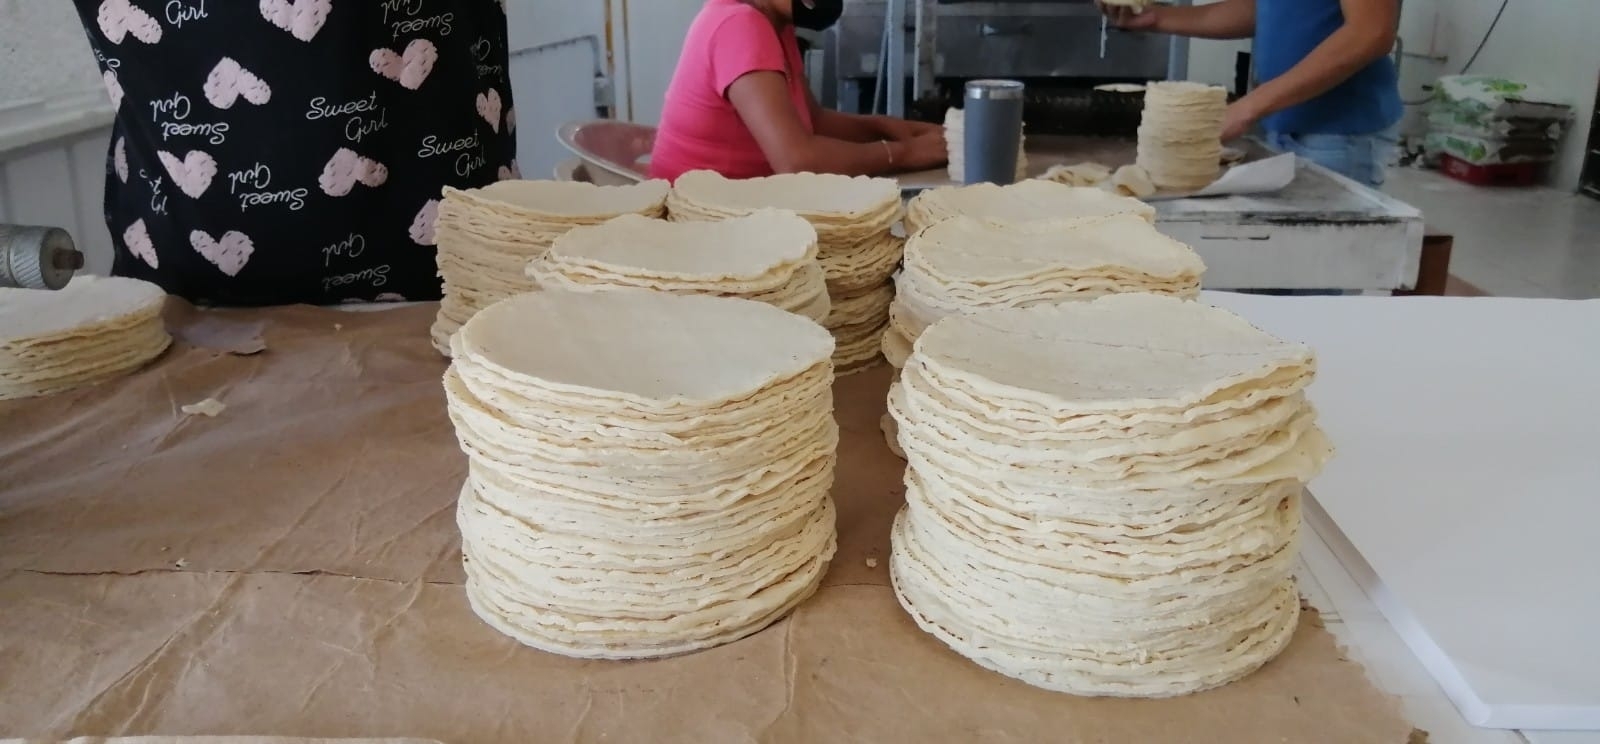 El precio de la tortilla semantiene estable en Isla Mujeres